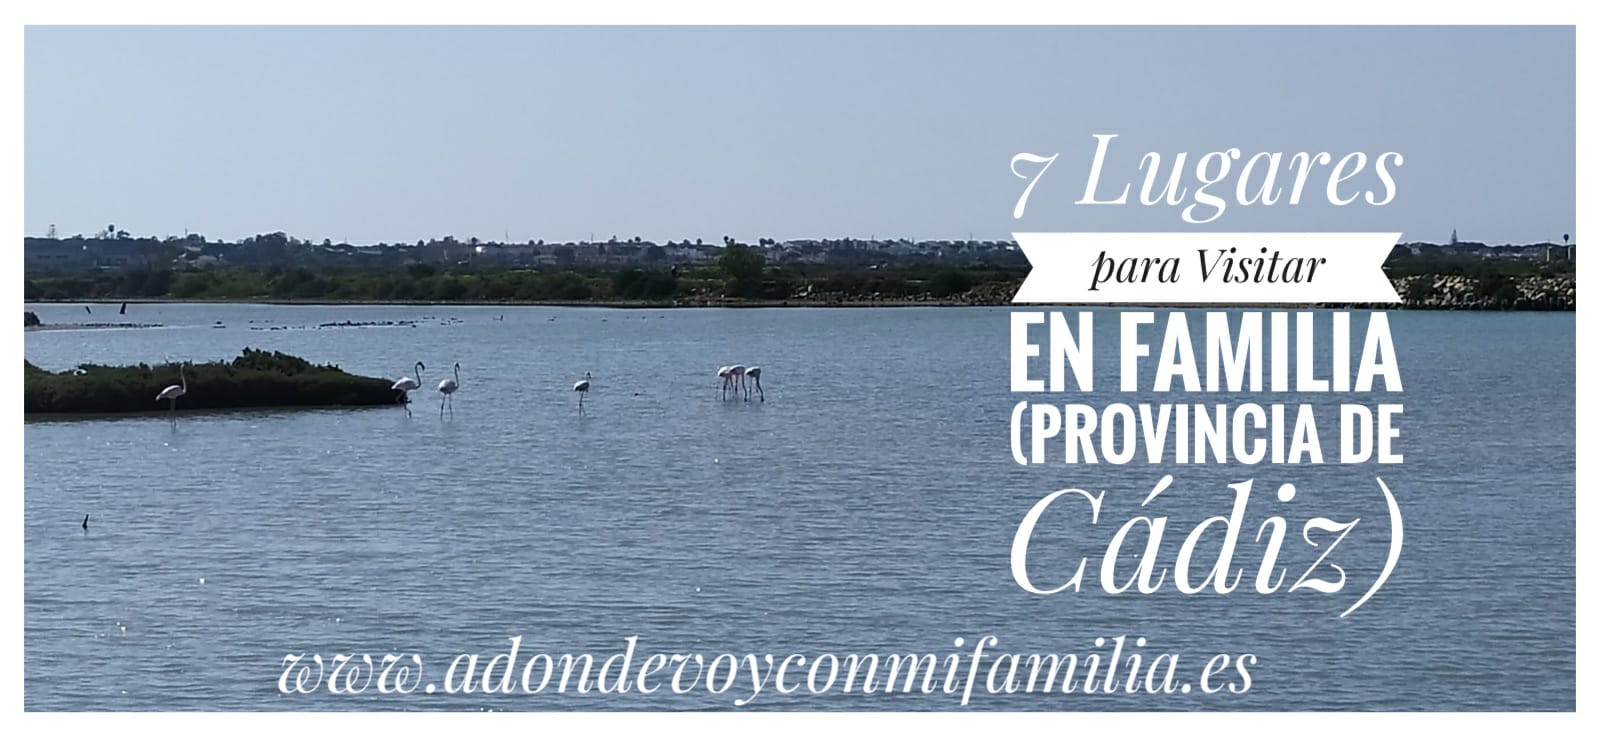 7 lugares para visitar en familia provincia de cadiz Adondevoyconmifamilia